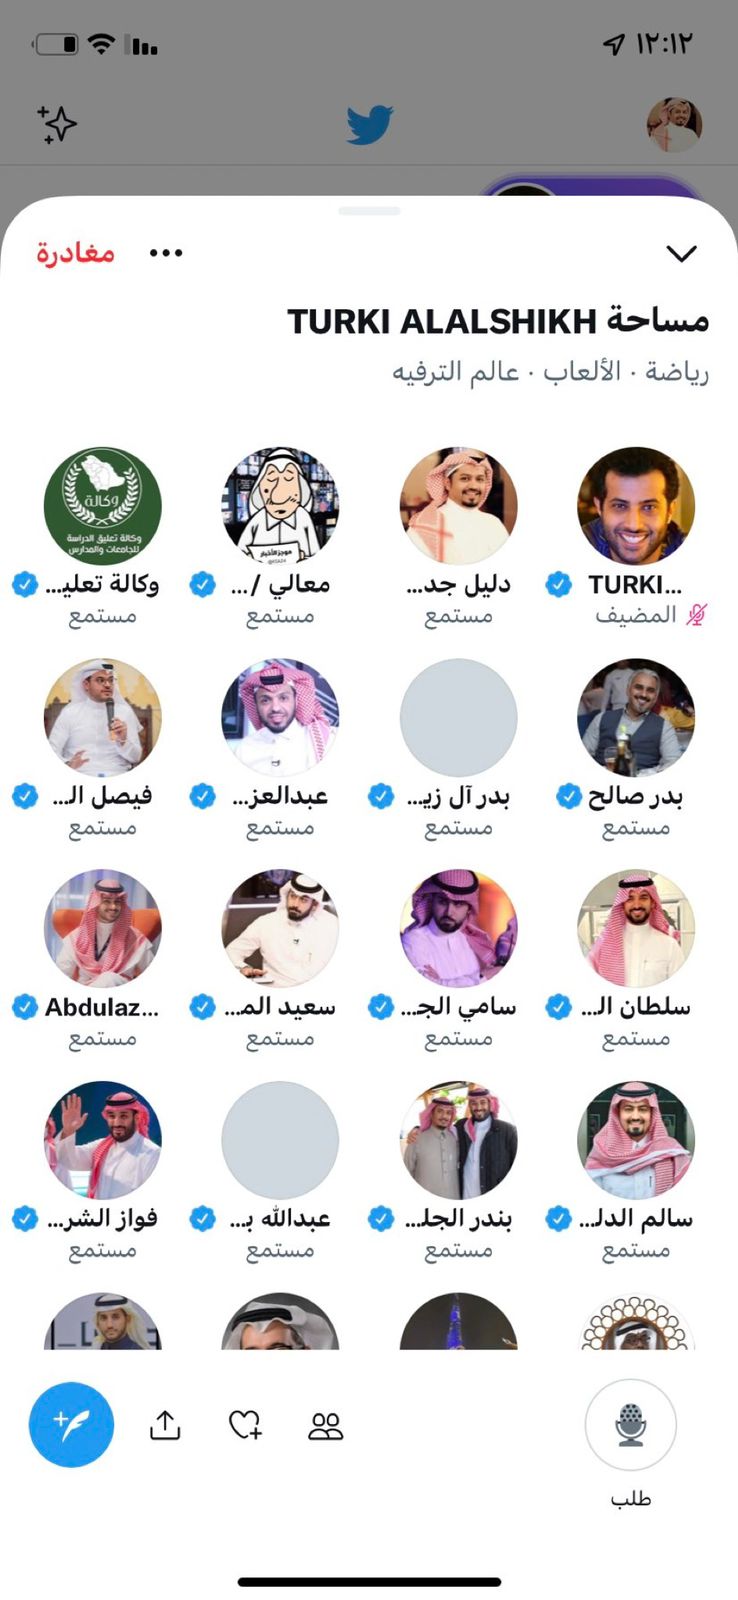 رقم قياسي لمساحة تركي آل الشيخ على تويتر بأكثر من 41 ألف شخص